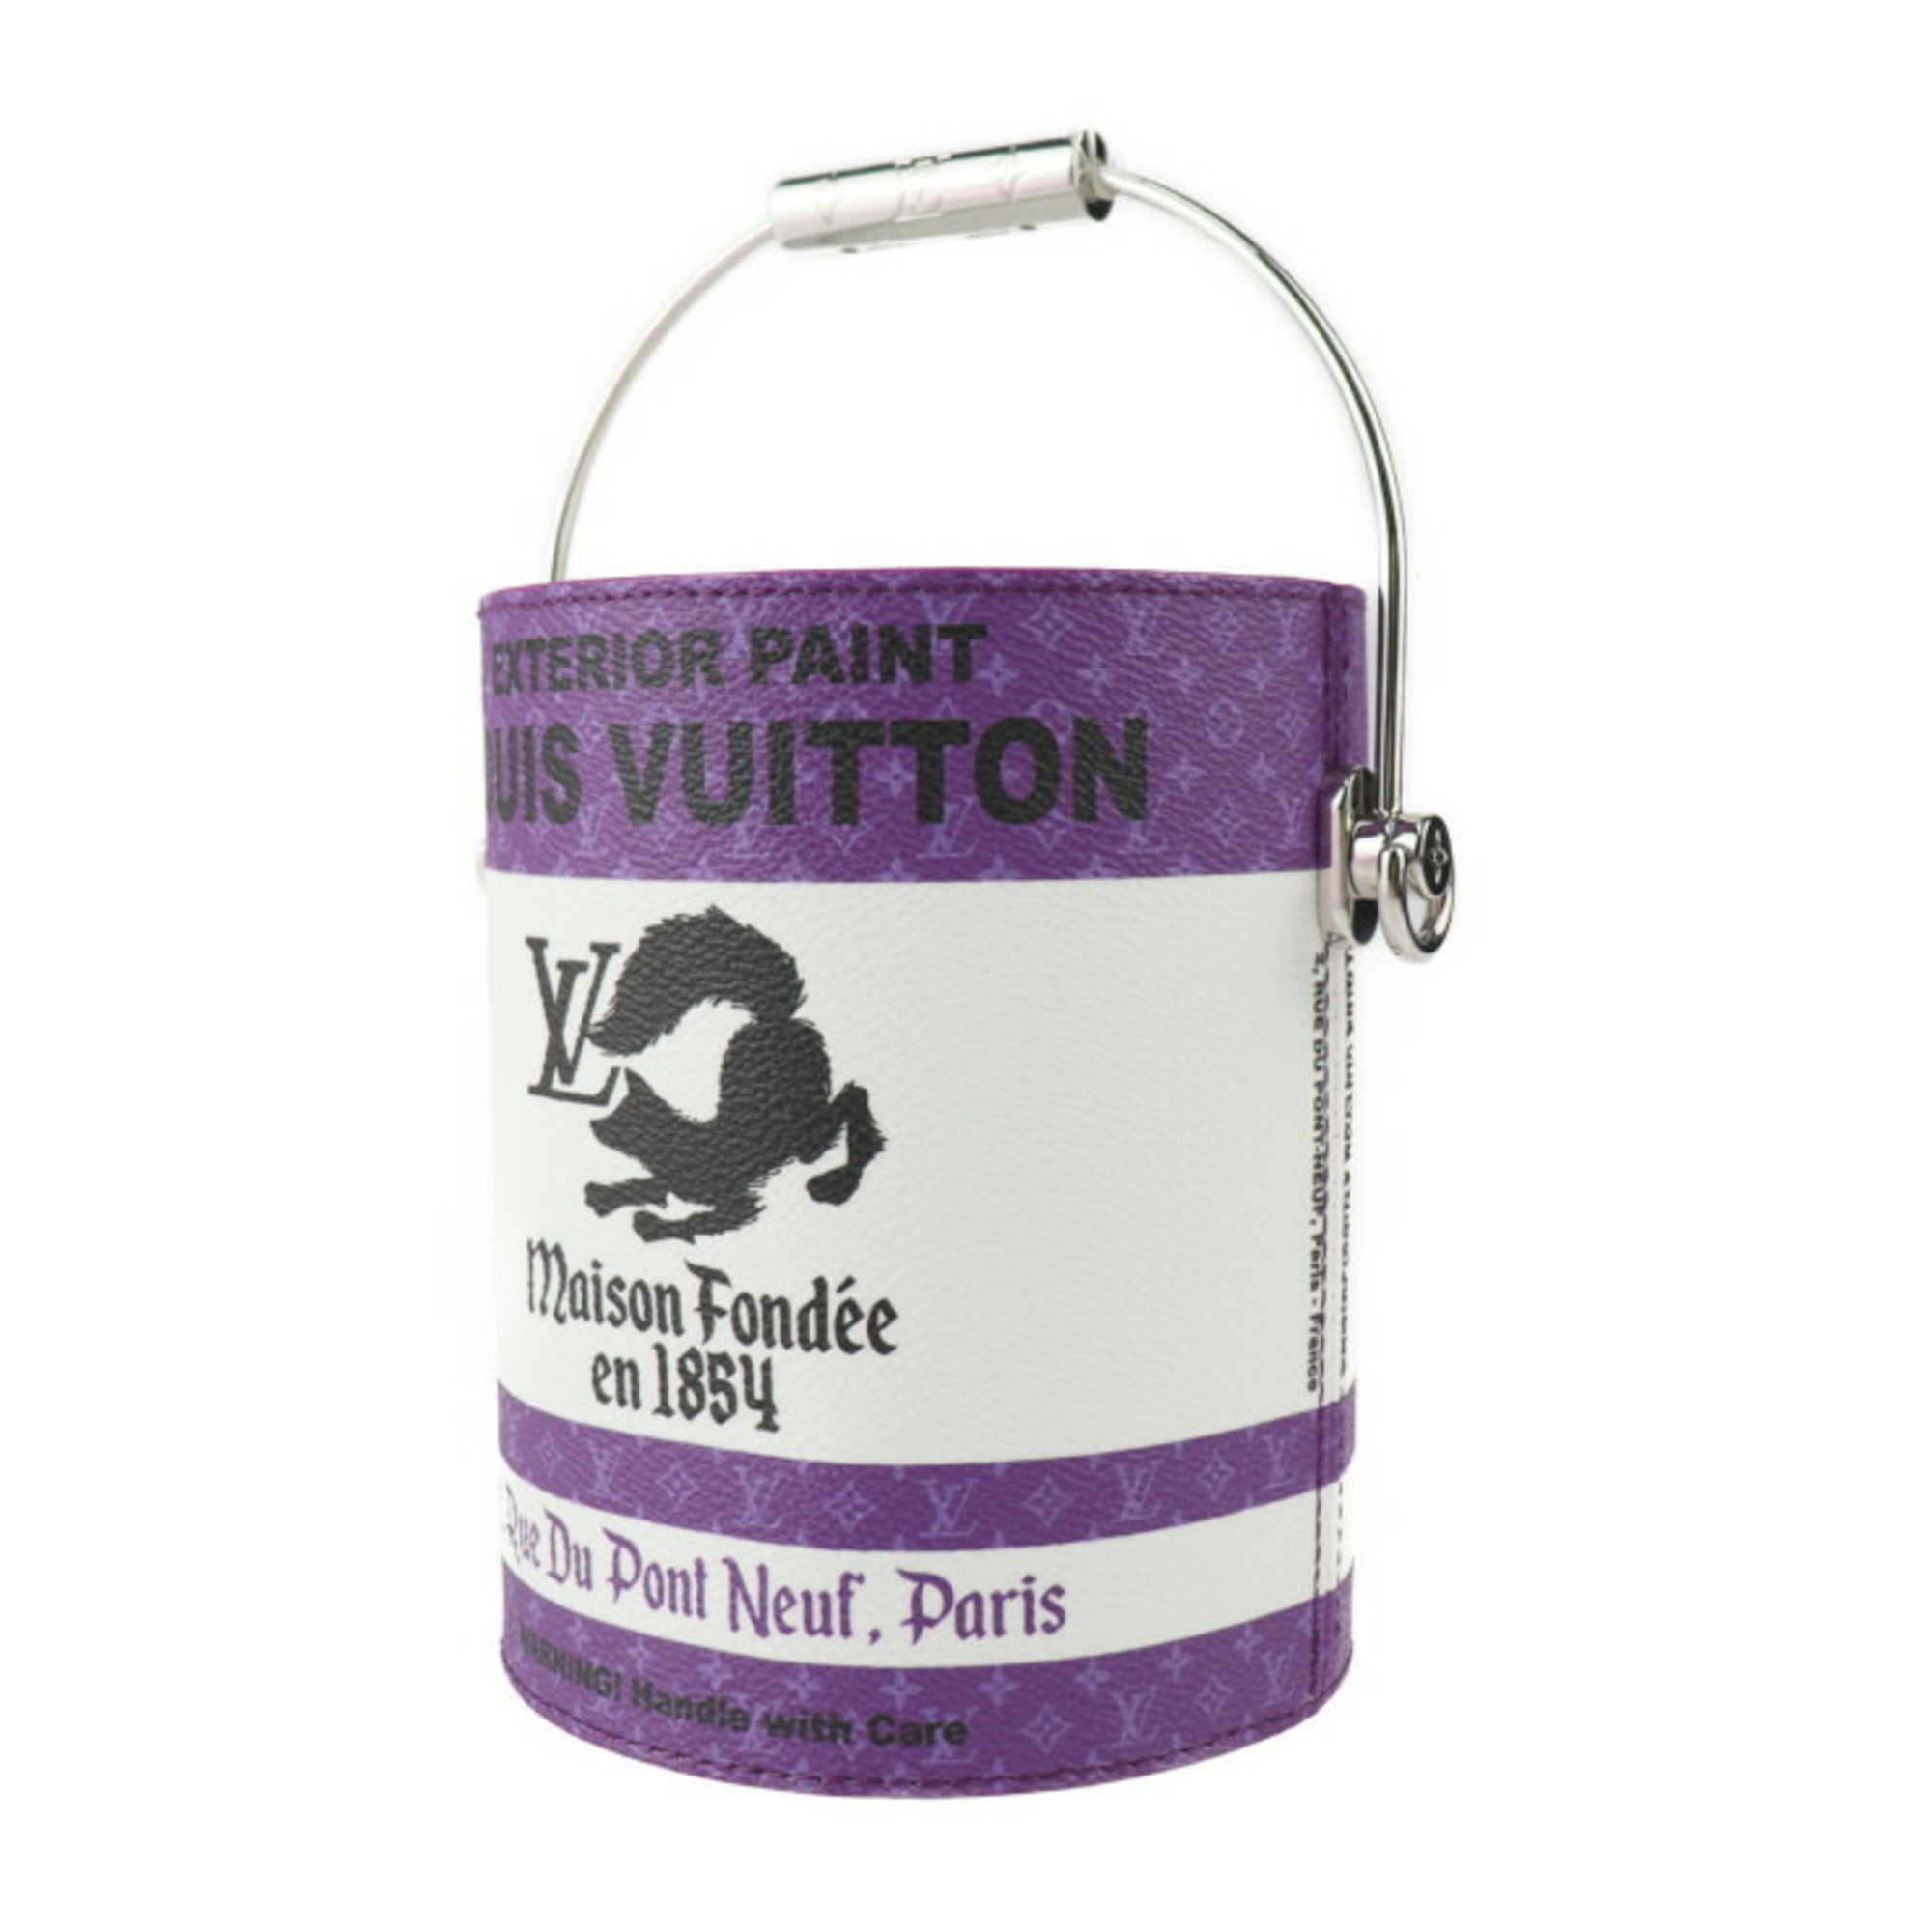 LOUIS VUITTON LV Paint Can Handbag M81591 PVC Canvas x Leather Purple White Silver Hardware 2WAY Shoulder Bag Monogram Vuitton